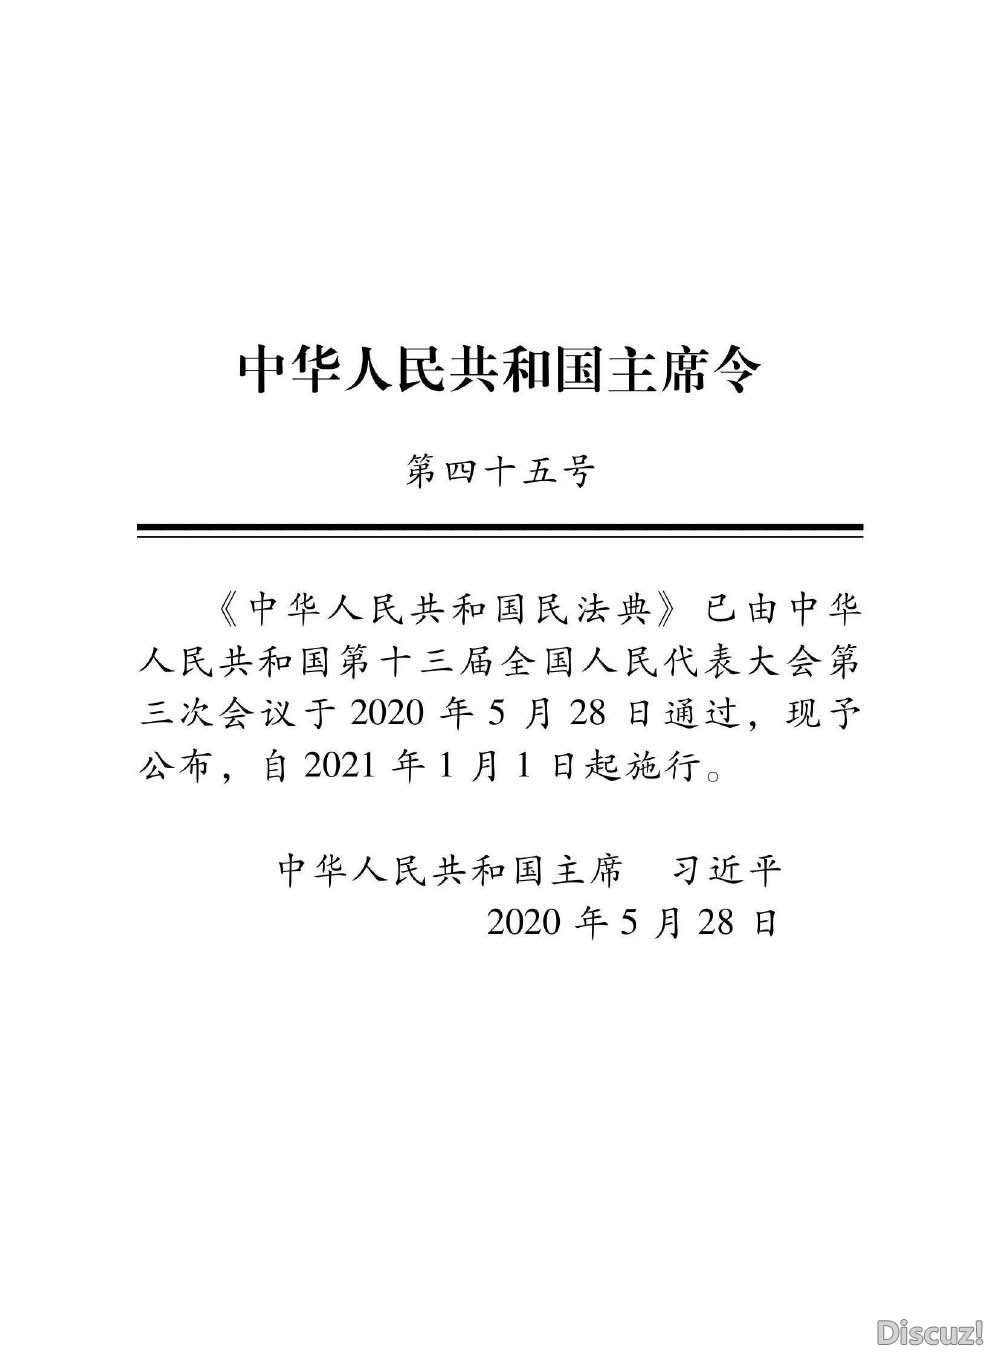 中华人民共和国民法典_页面_4.jpg